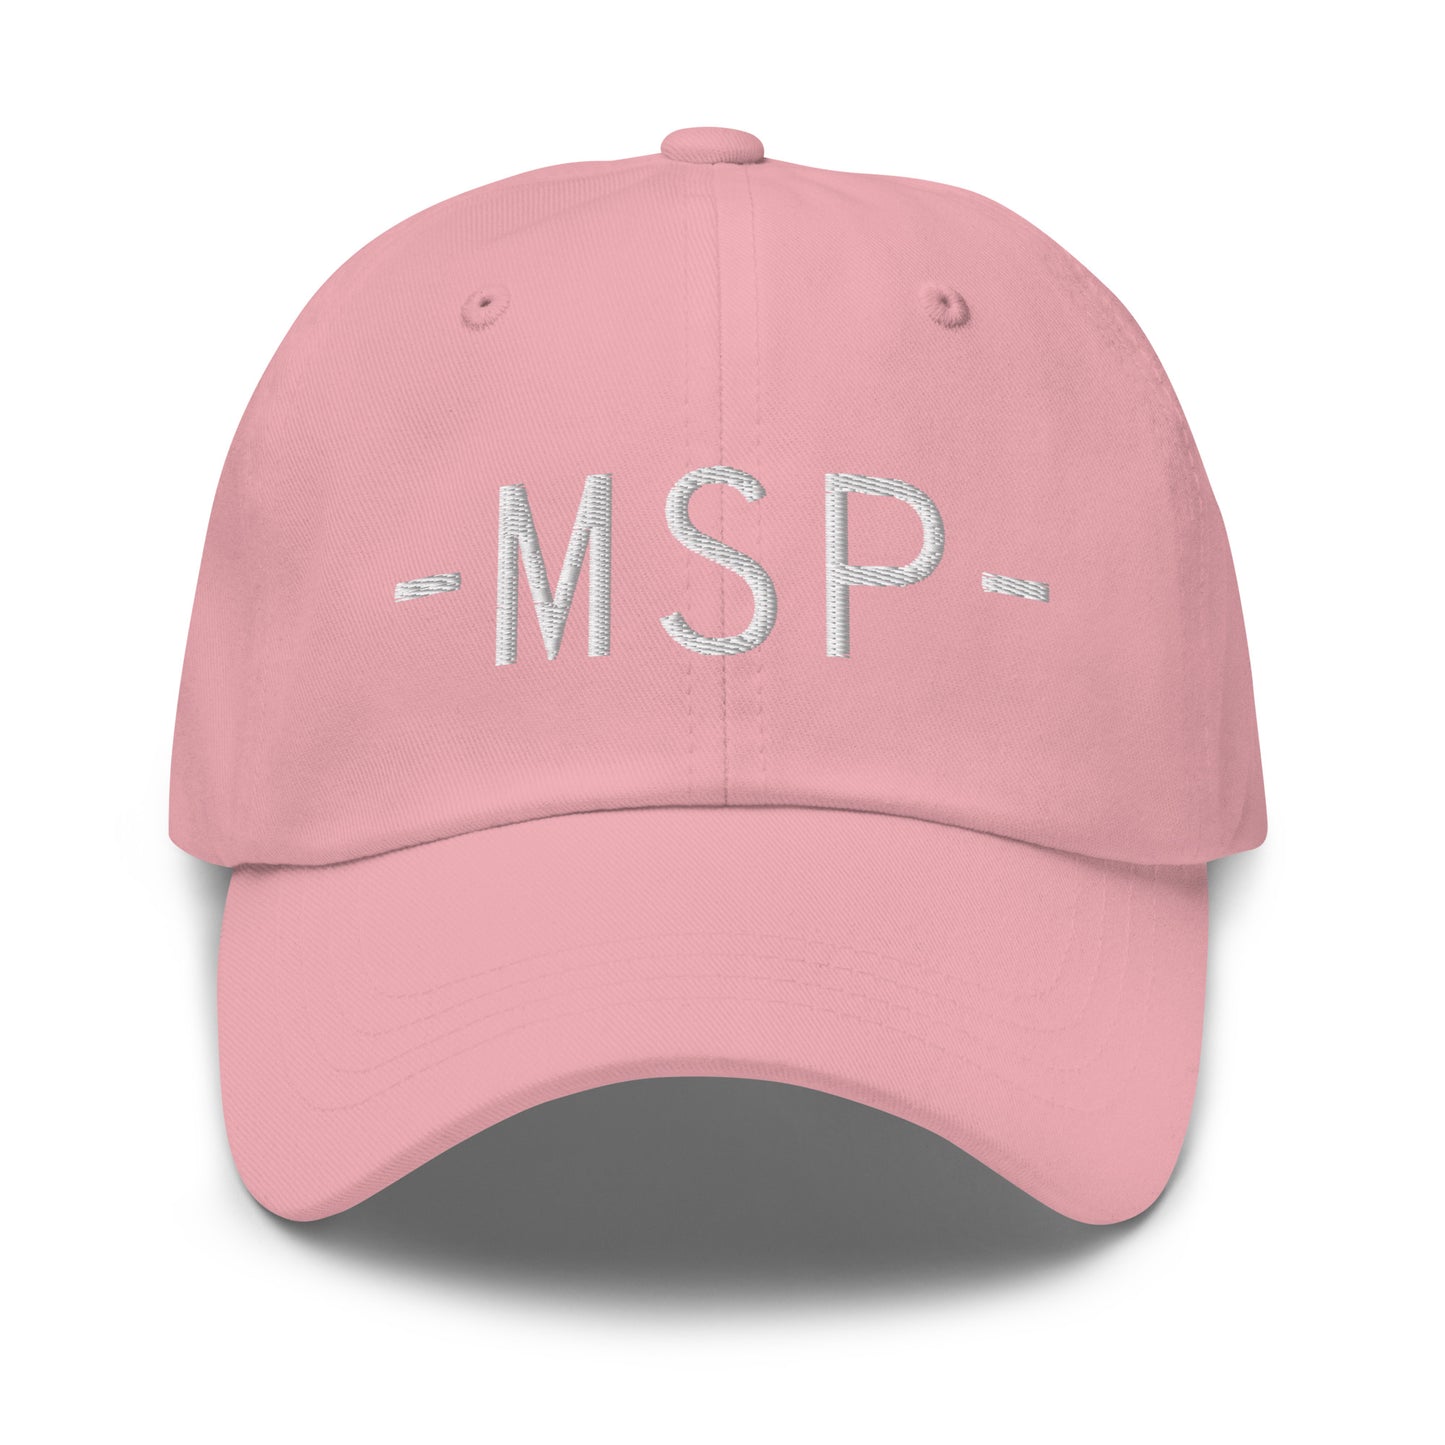 Souvenir Baseball Cap - White • MSP Minneapolis • YHM Designs - Image 25